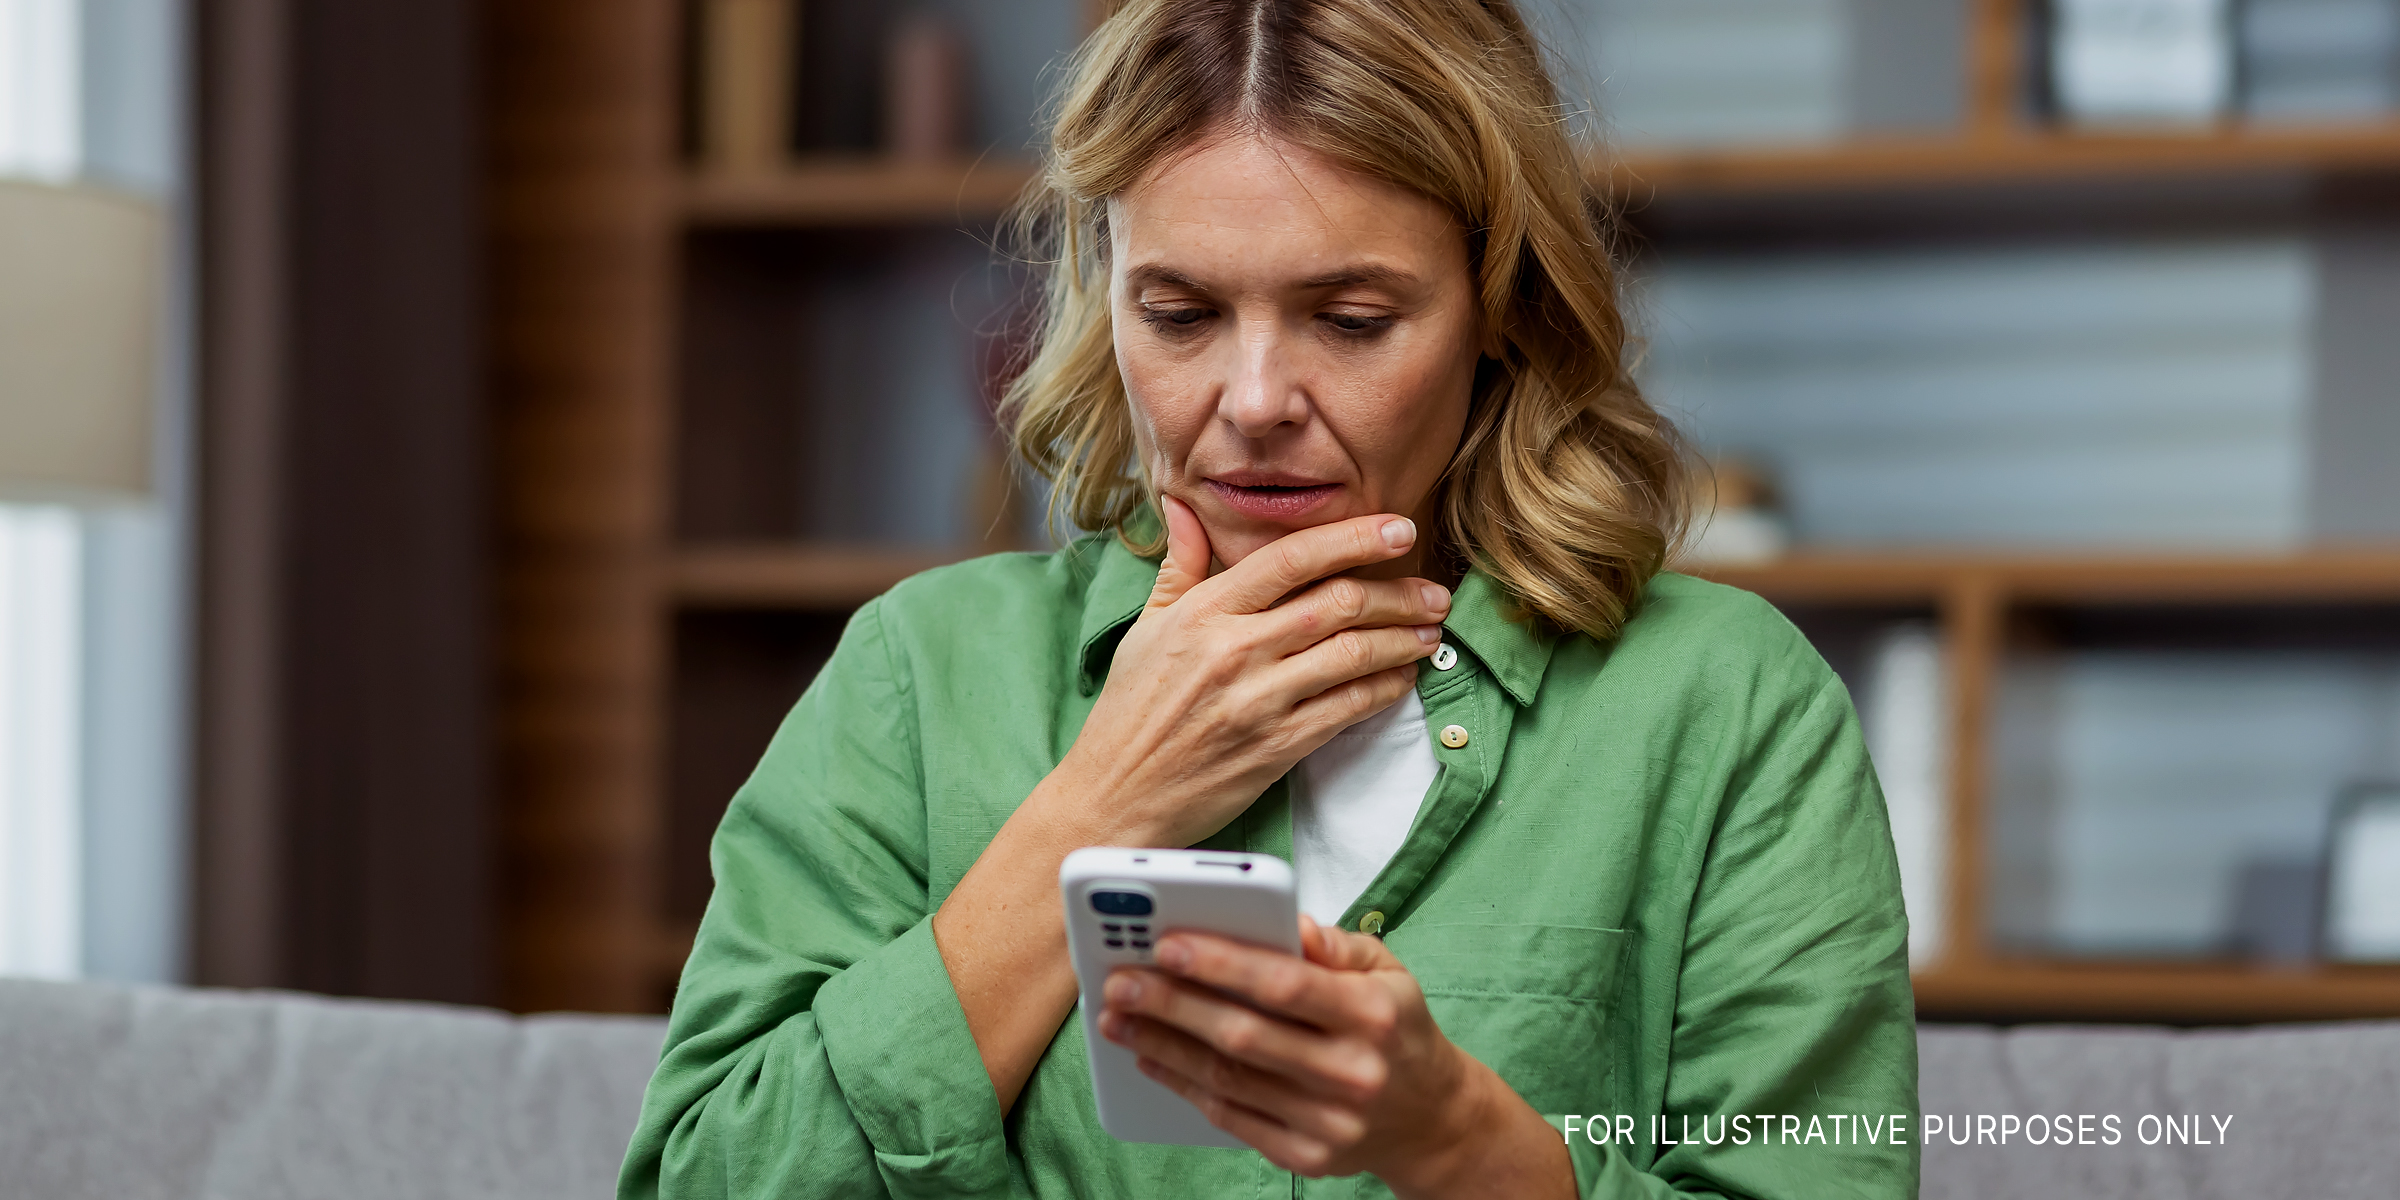 Femme regardant son téléphone, perplexe | Source : Shutterstock